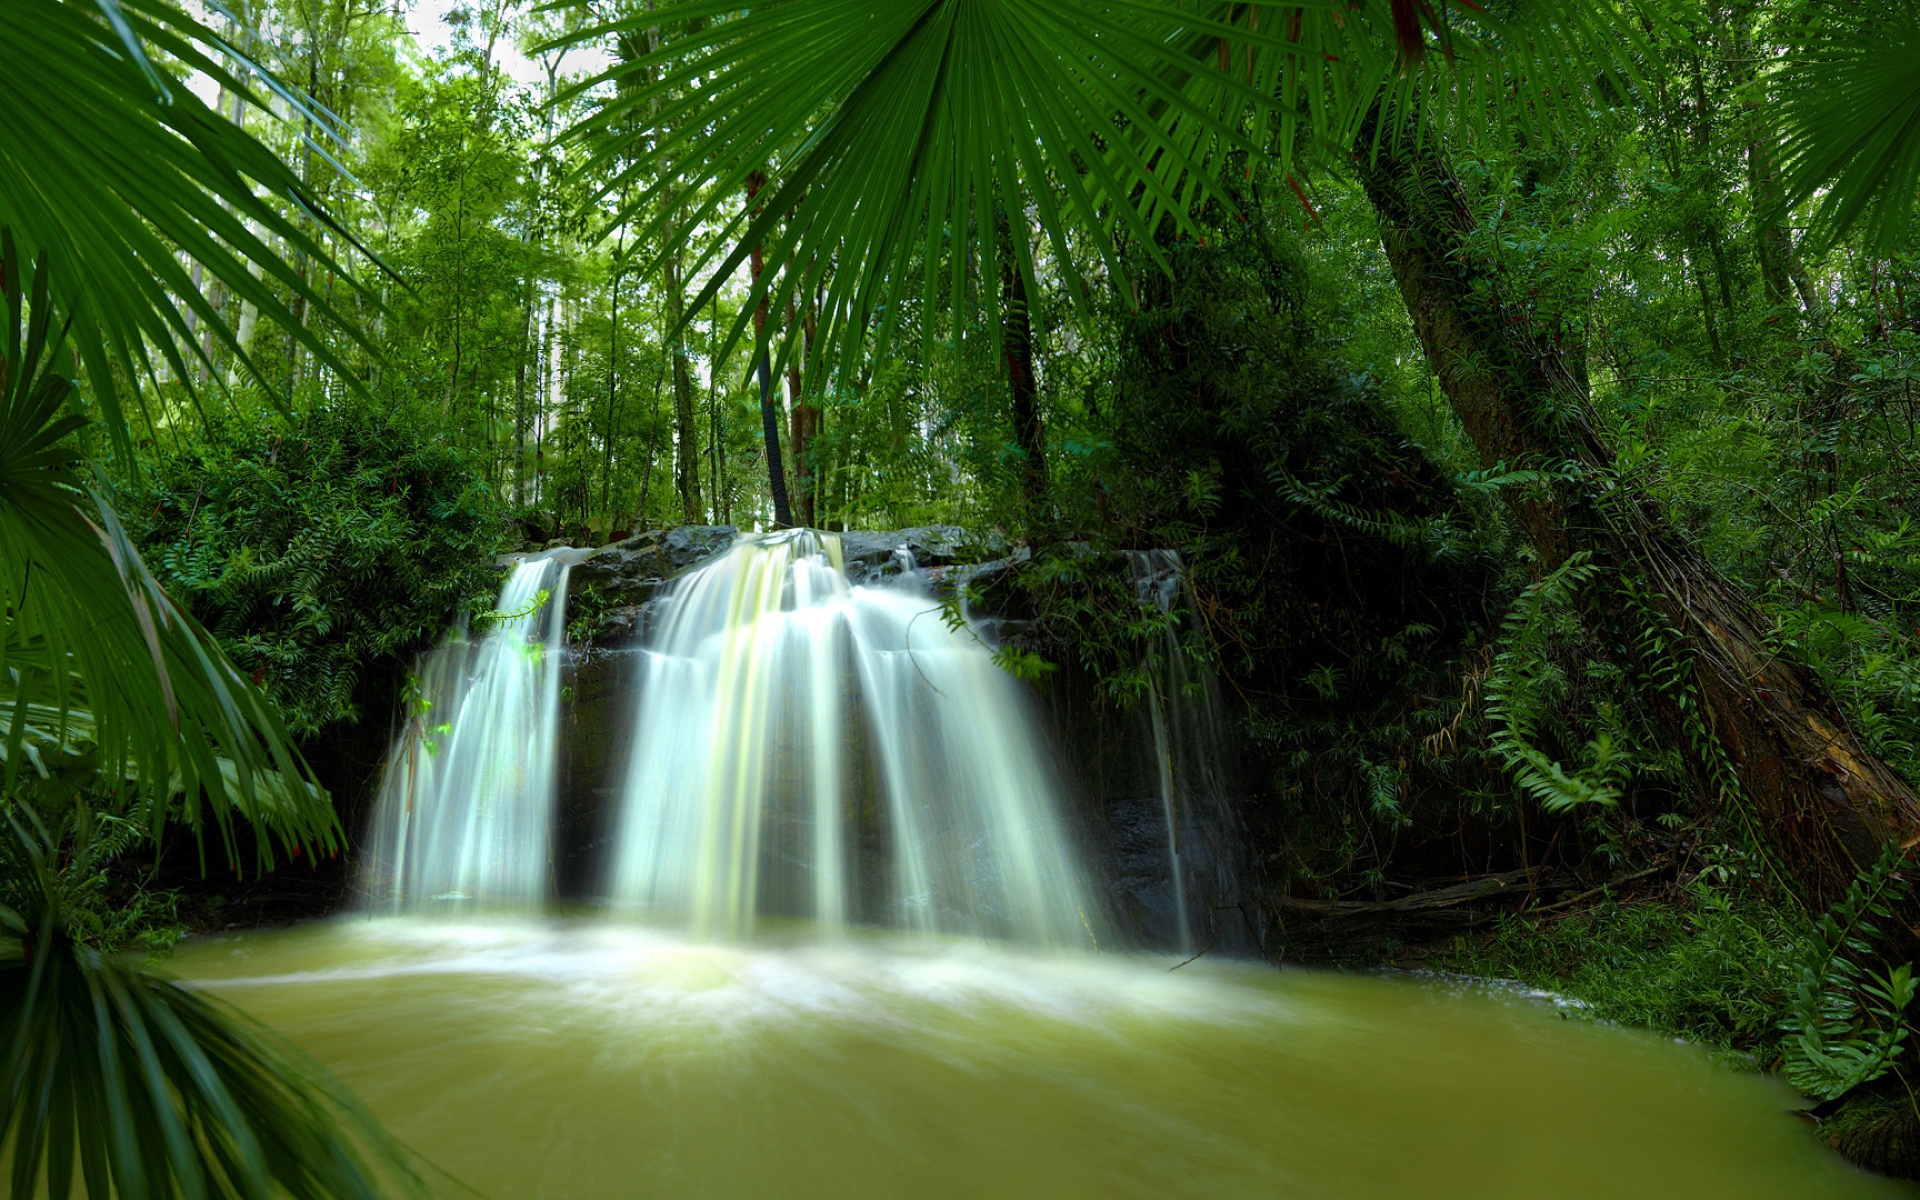 Cascad. Тропики лес водопад. Живая природа водопады. Красивая природа джунгли. Экзотическая природа.